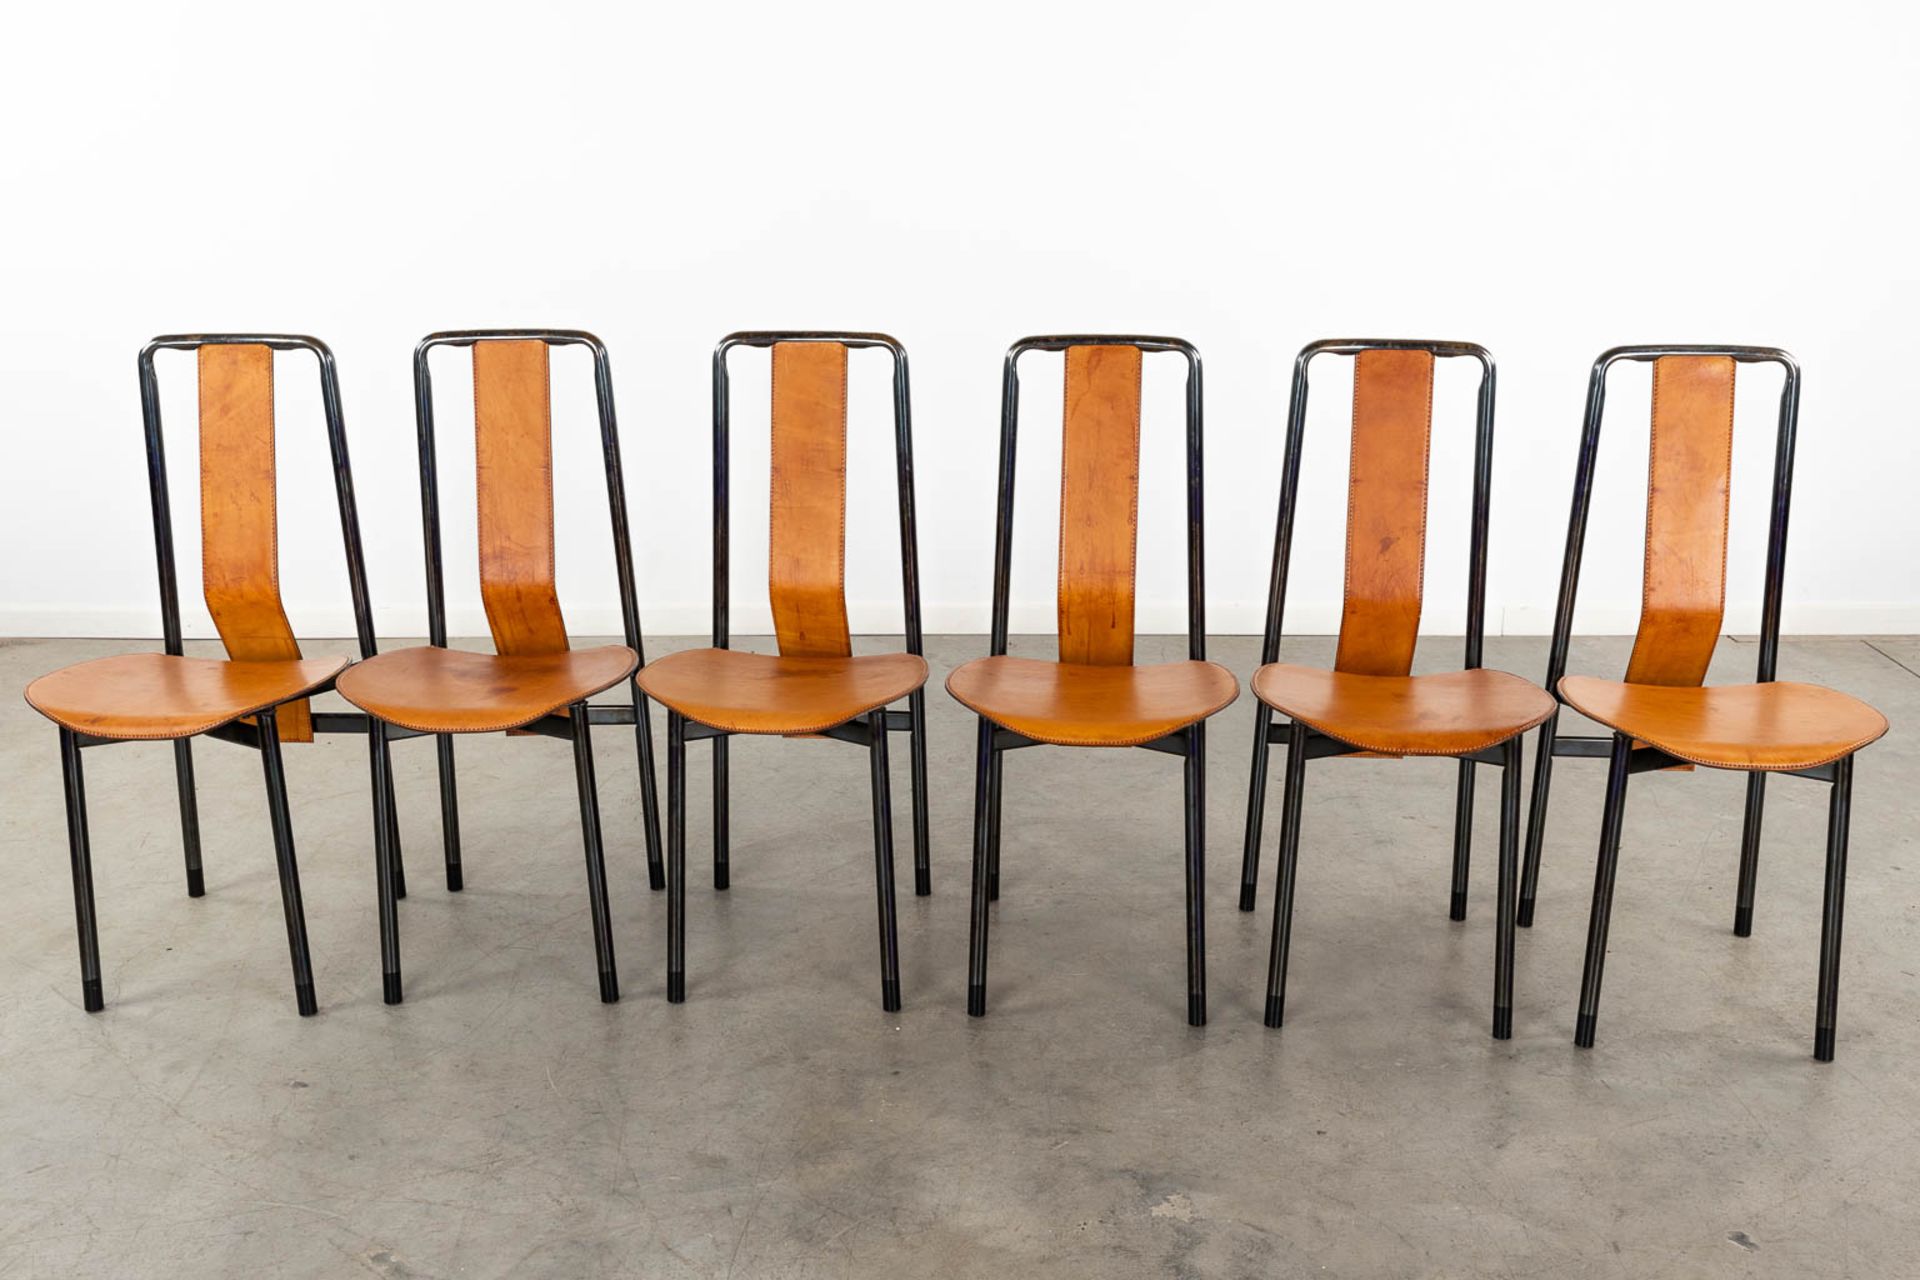 Achille CASTIGLIONI (1918-2002) 'Irma' for Zanotta, 6 chairs. (D:49 x W:40 x H:90 cm) - Image 3 of 17